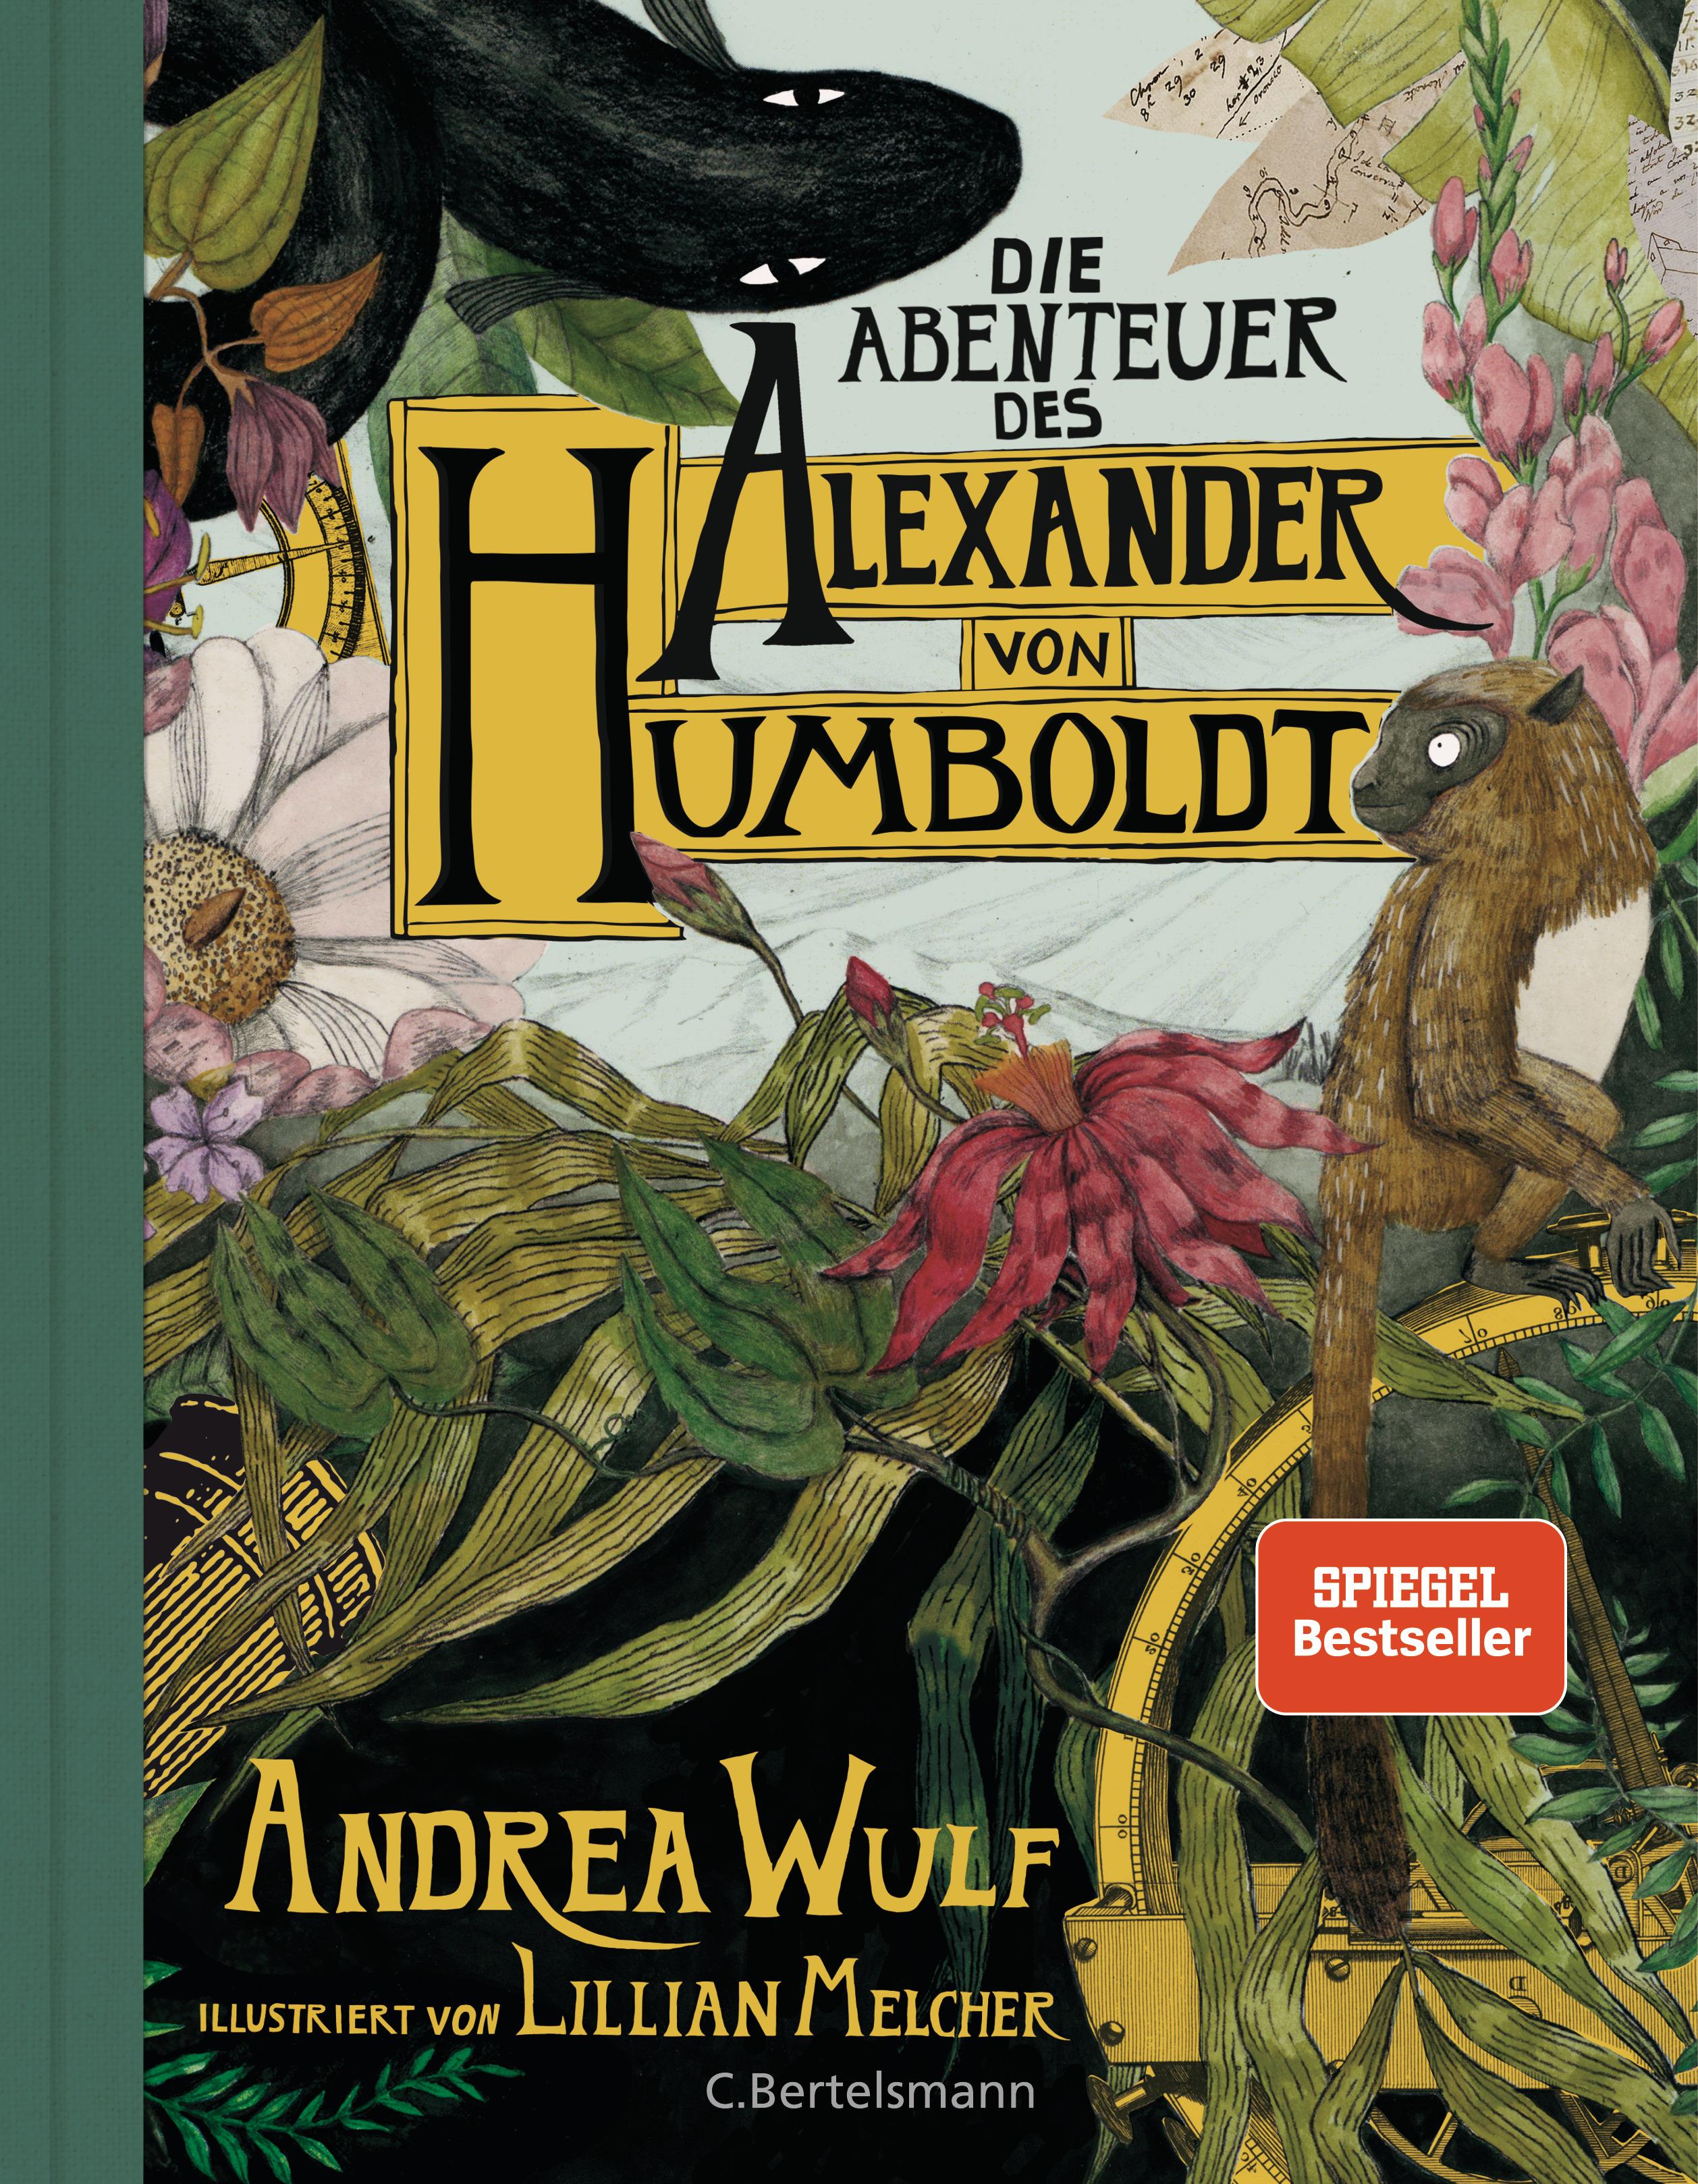 Die Abenteuer des Alexander von Humboldt Eine Entdeckungsreise; Halbleinen, durchgängig farbig illustriert